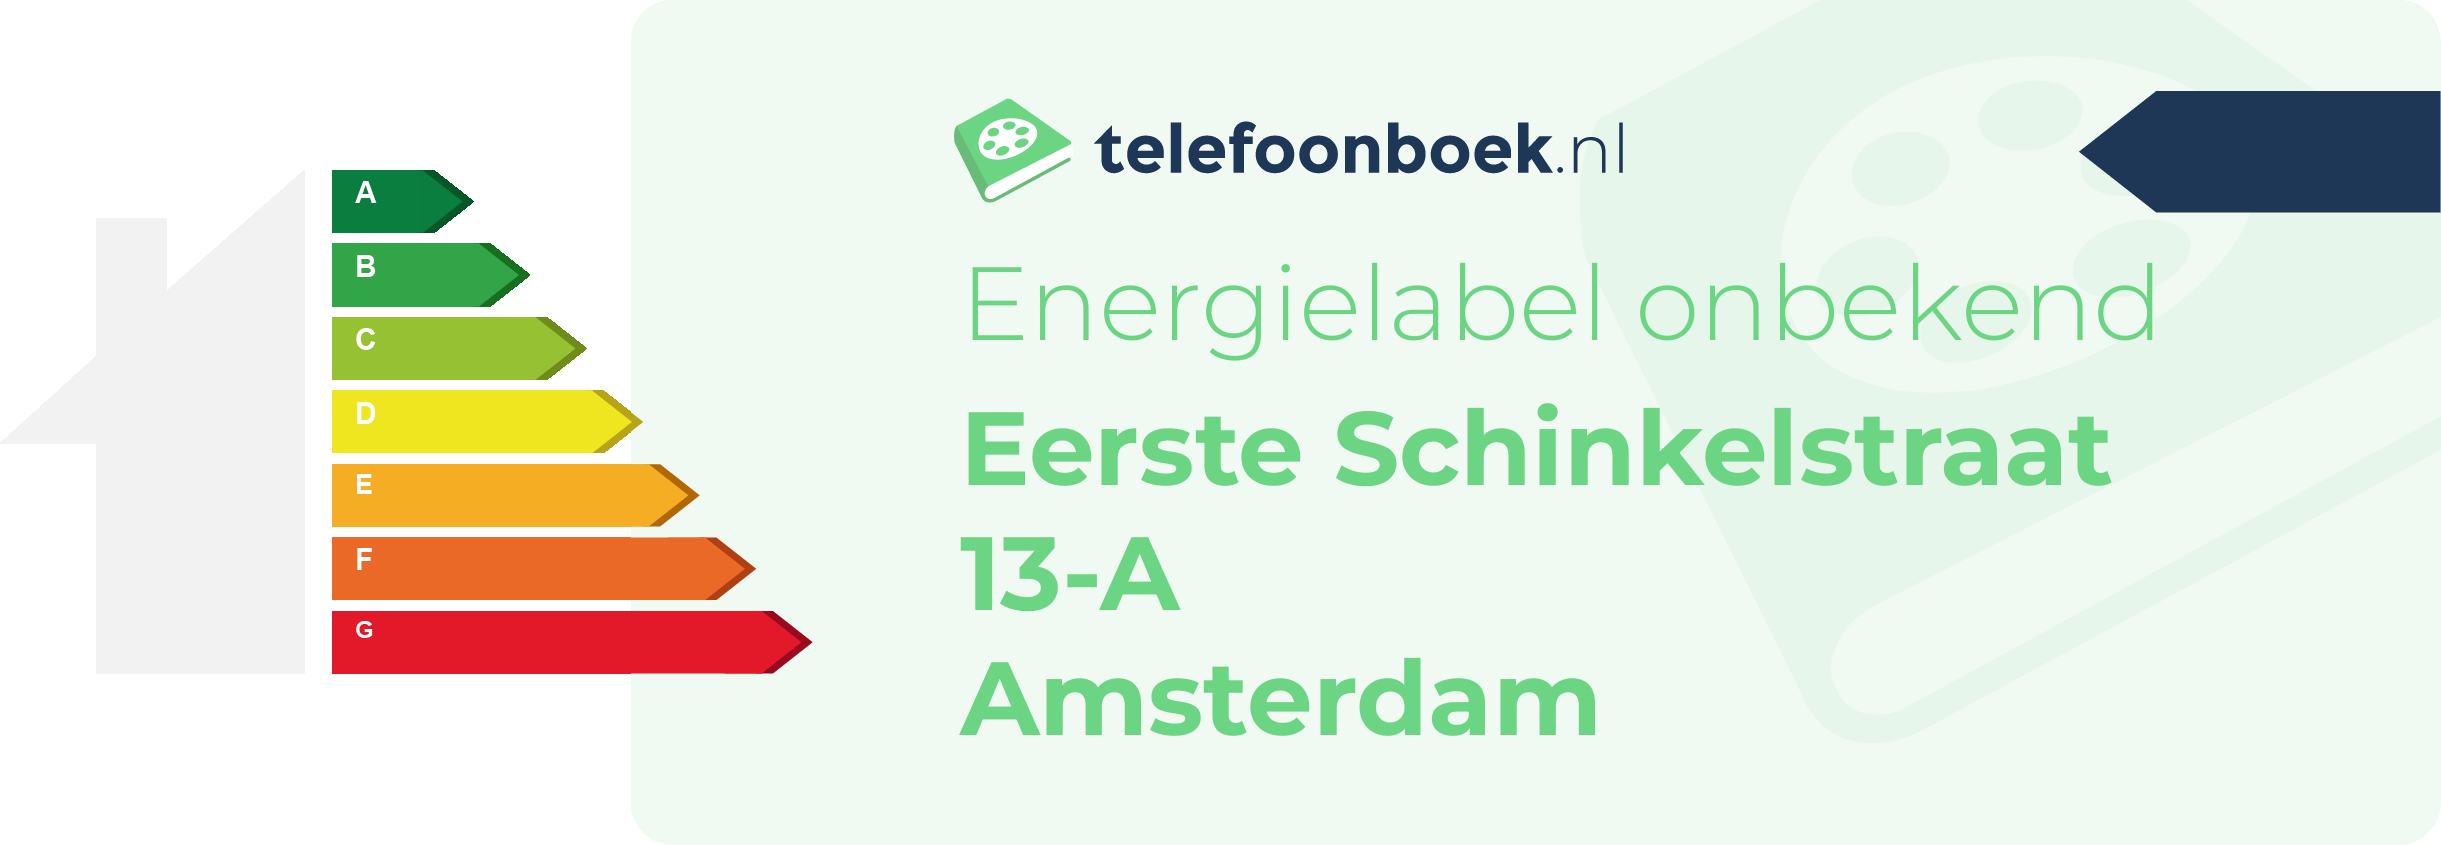 Energielabel Eerste Schinkelstraat 13-A Amsterdam